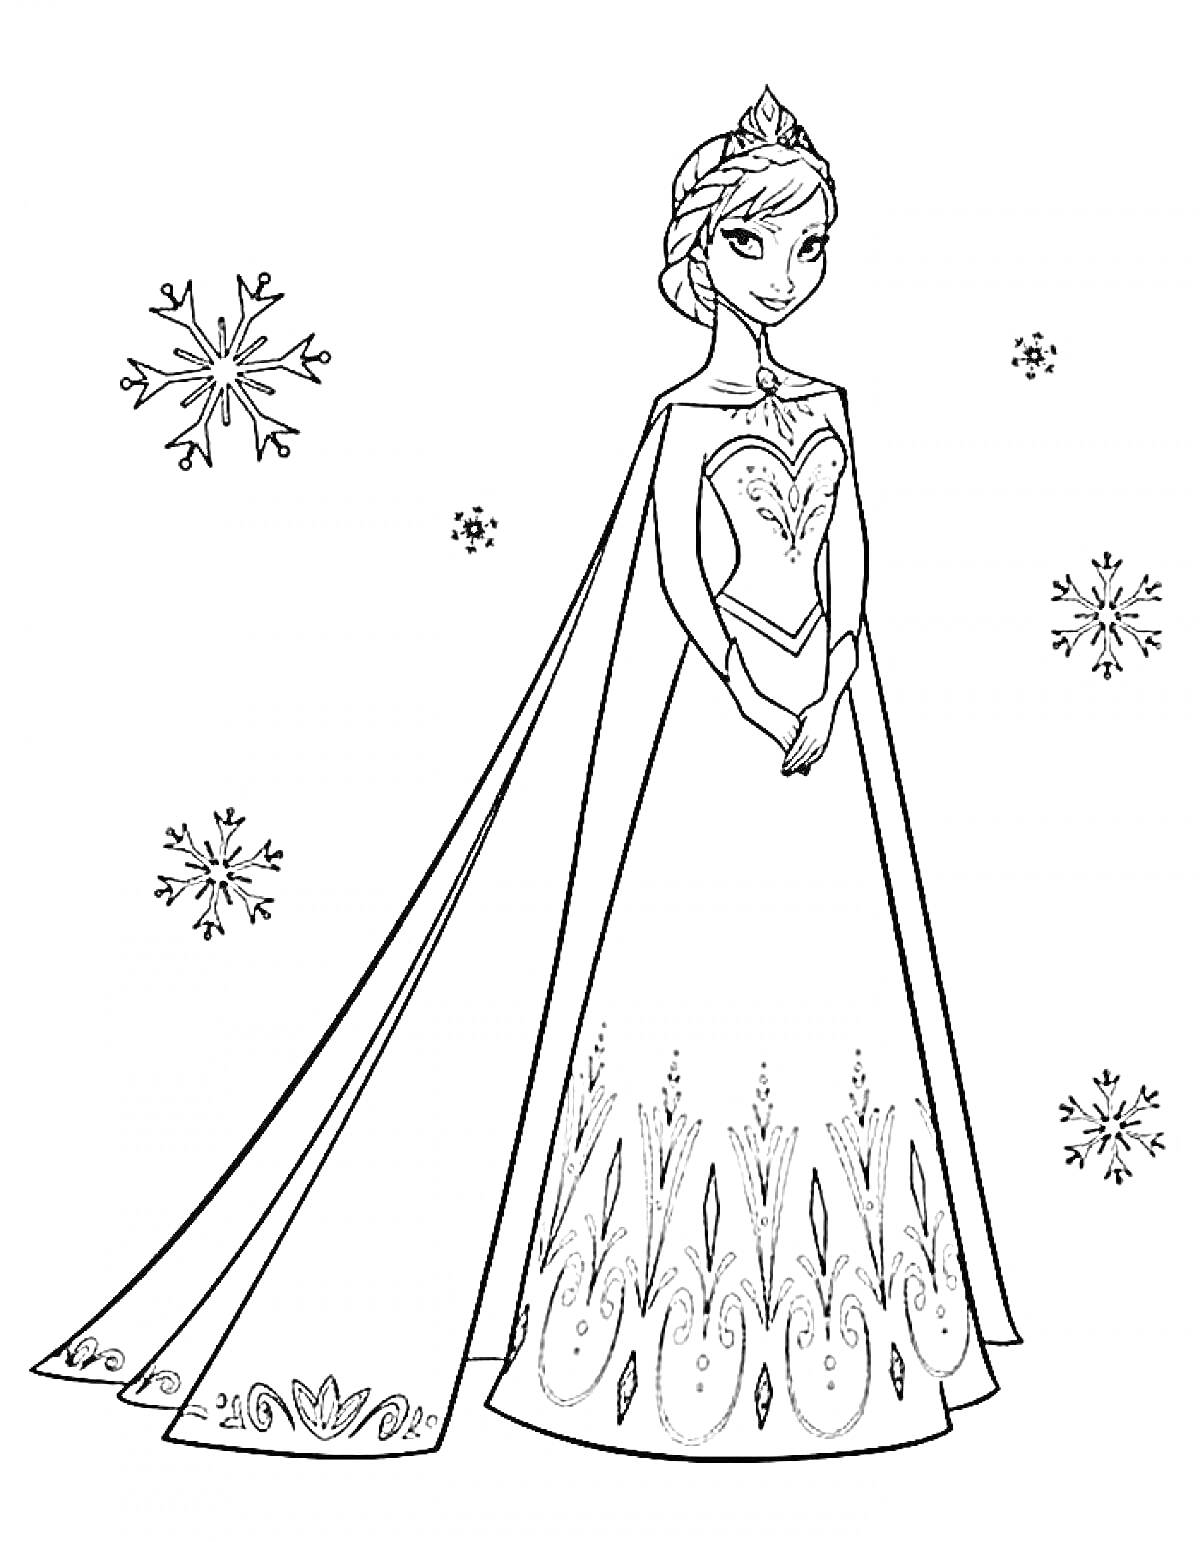 Раскраска Эльза в платье с узорами и снежинками вокруг